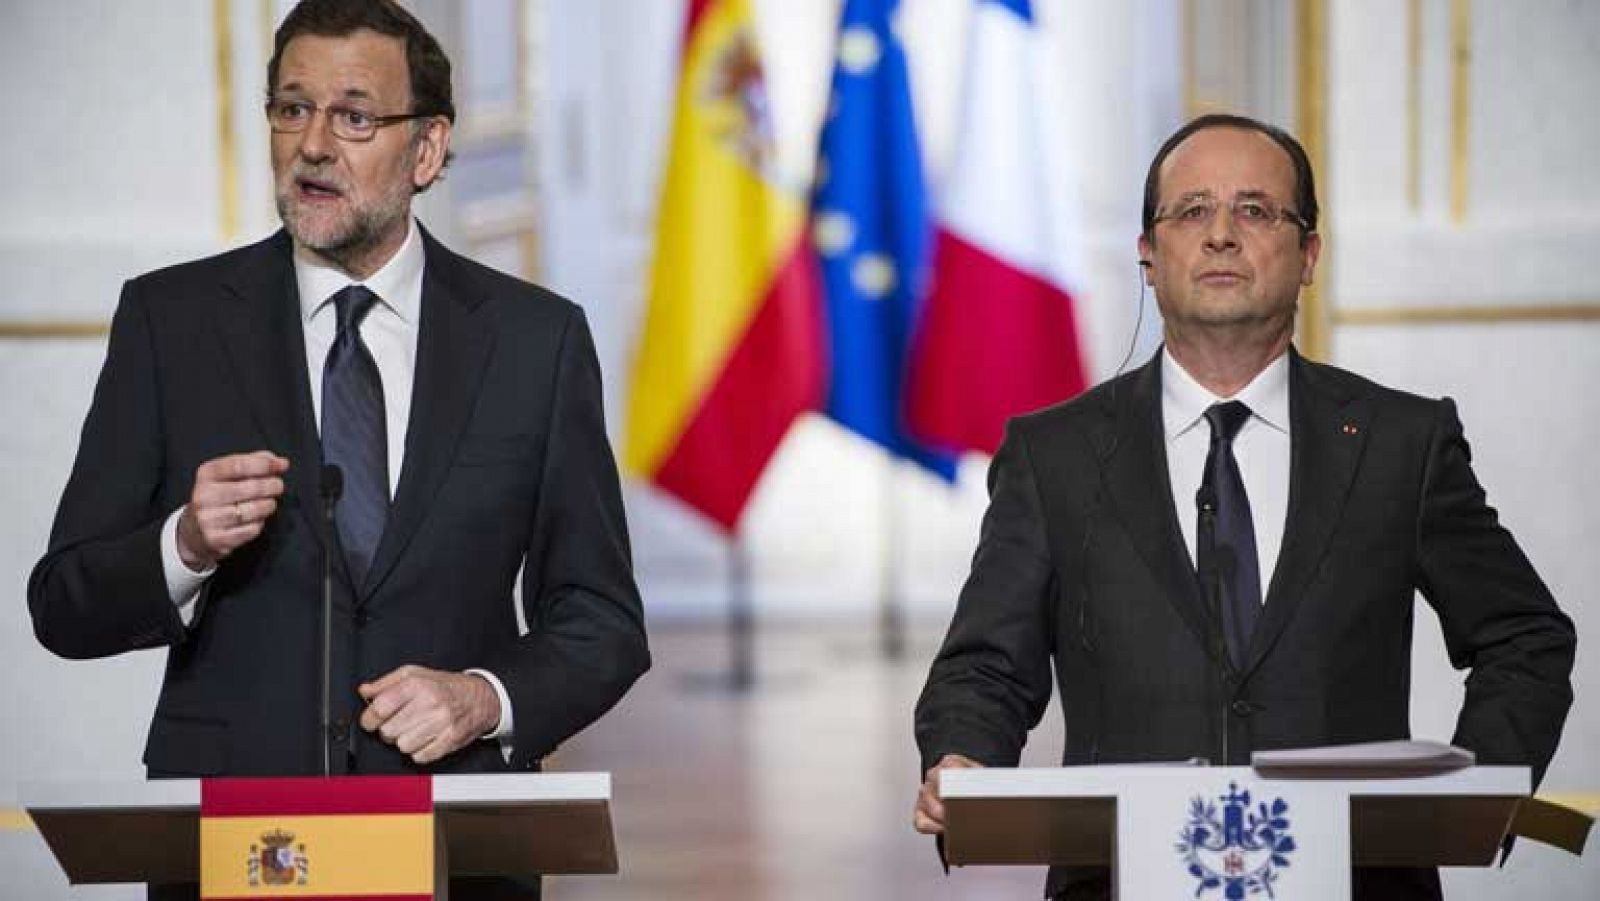 La mañana de la 1 - Rajoy y Hollande defienden garantizar los depósitos